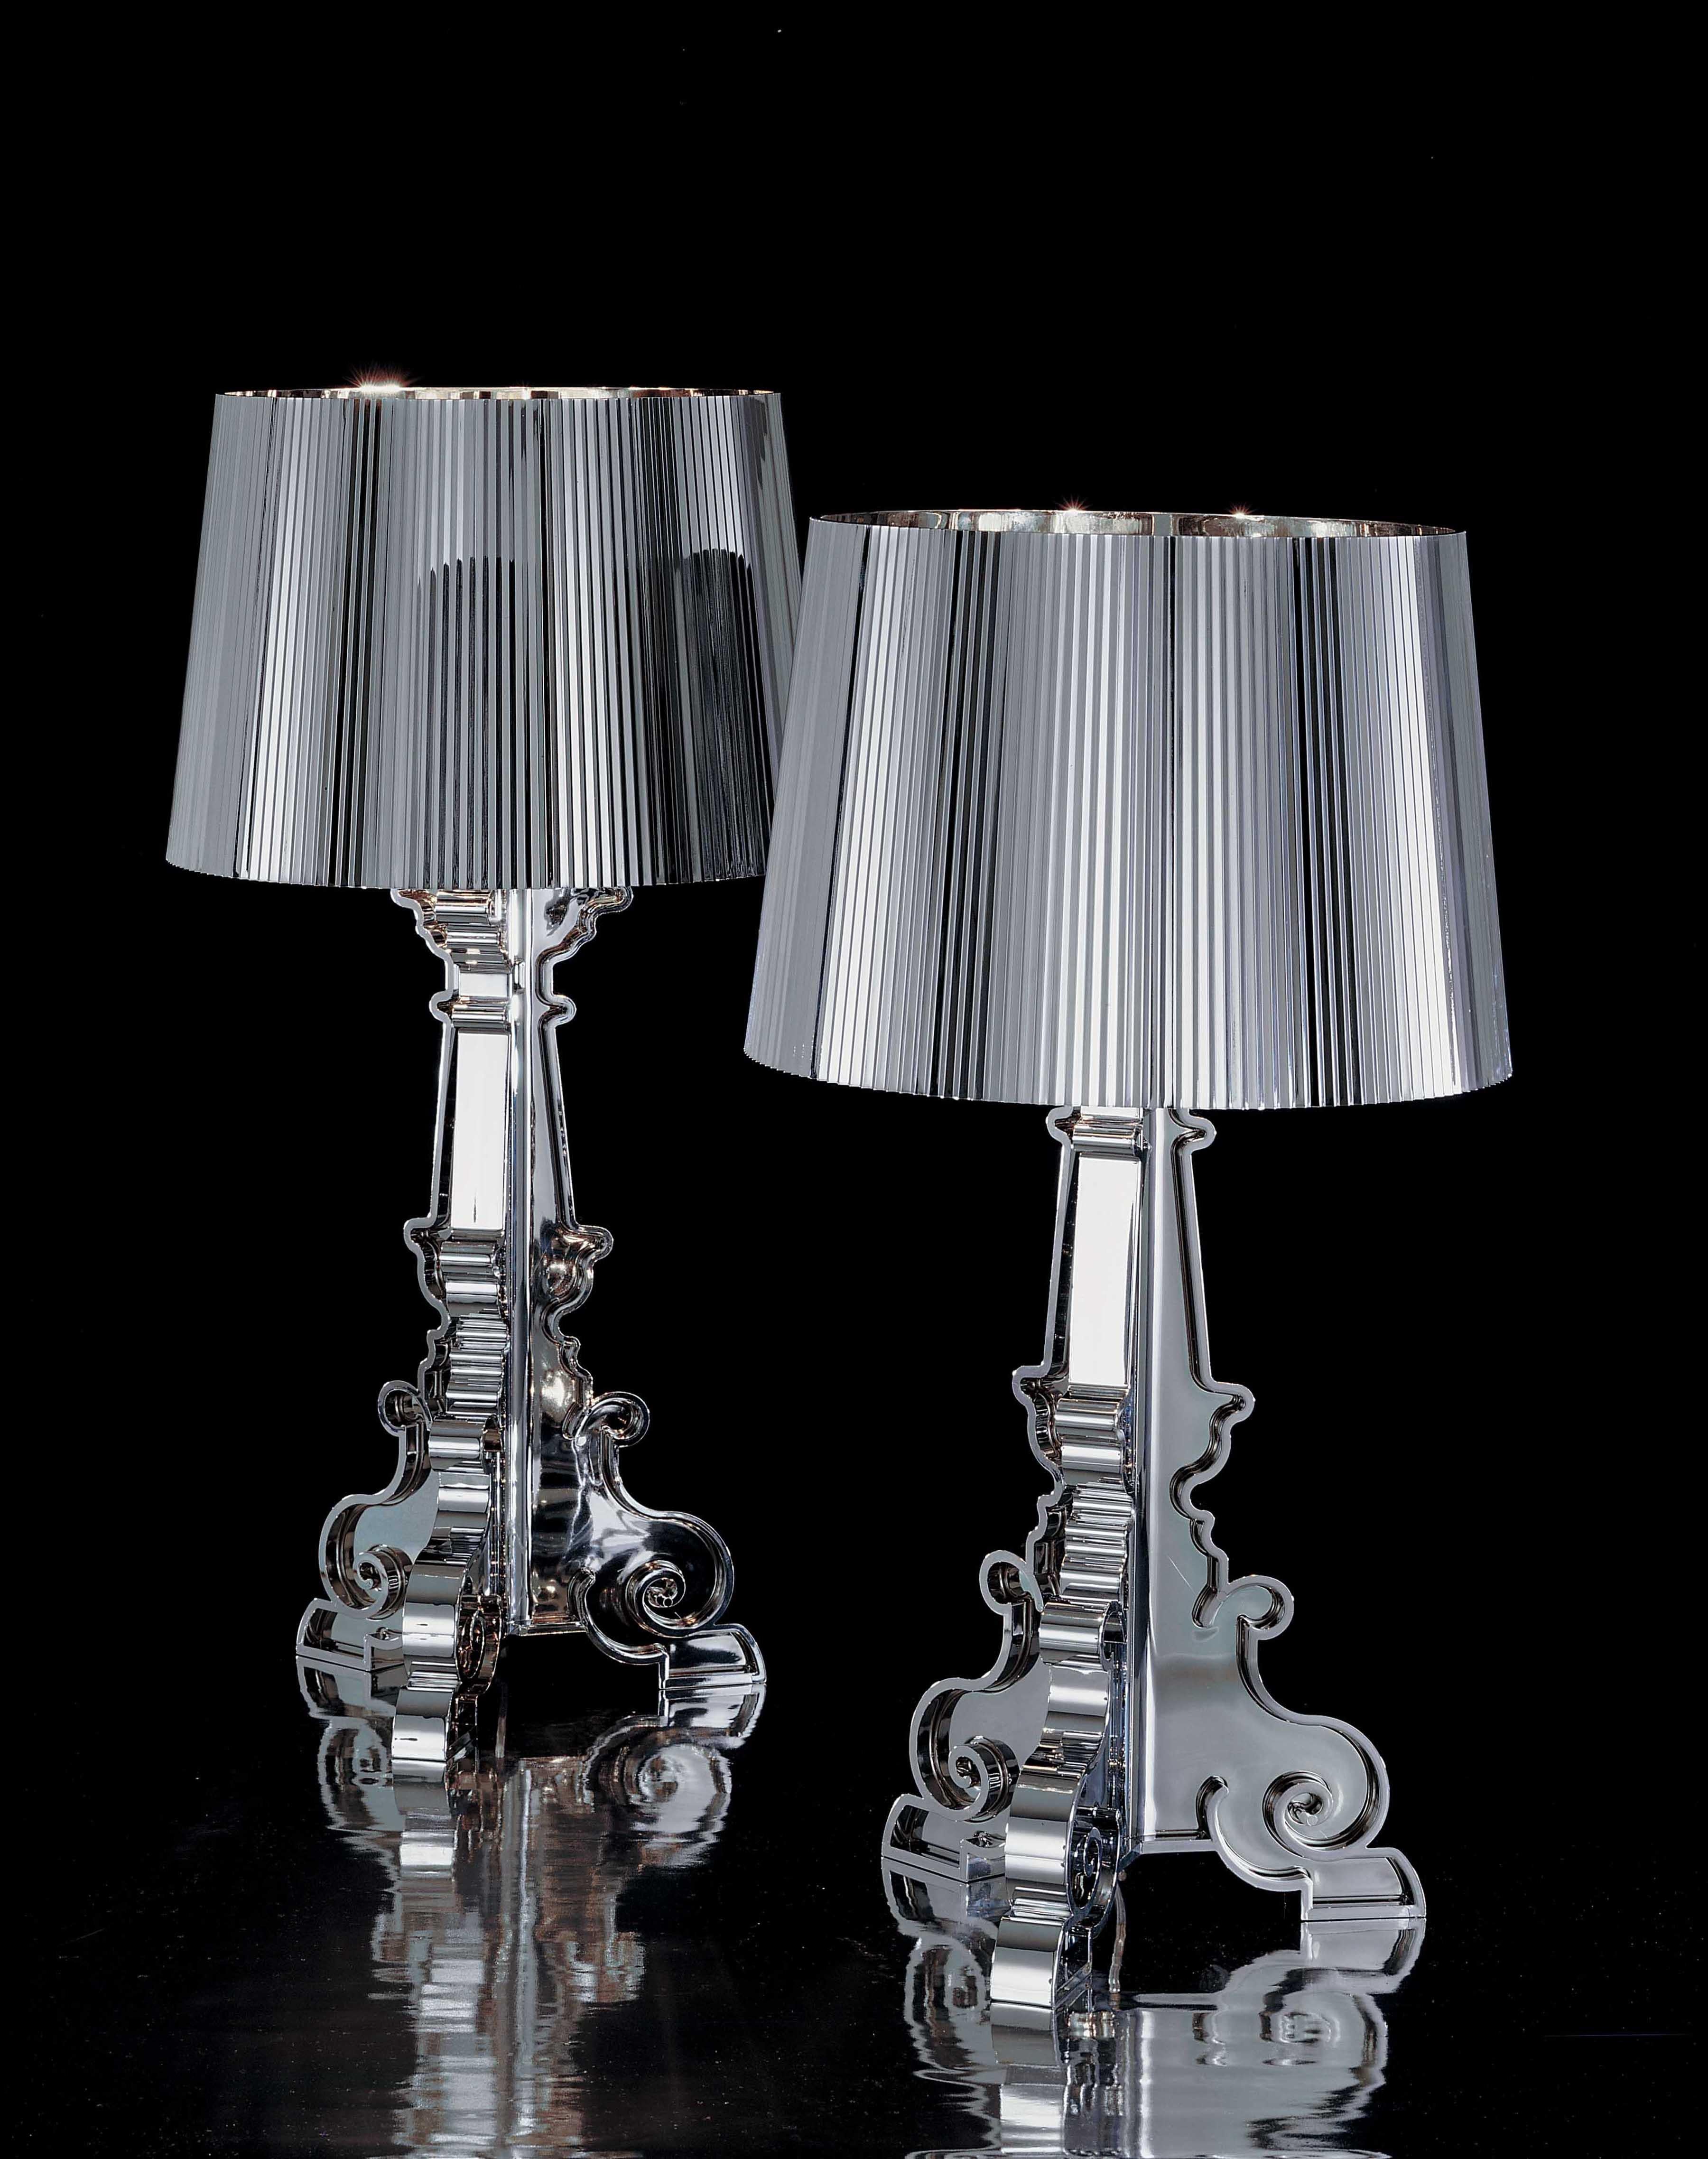 Lampe au style inimitable, Bourgie est l'une des meilleures ventes de Kartell, combinant habilement le style classique, la richesse et la tradition avec l'innovation et l'ironie. La base de style baroque est composée de trois couches décorées